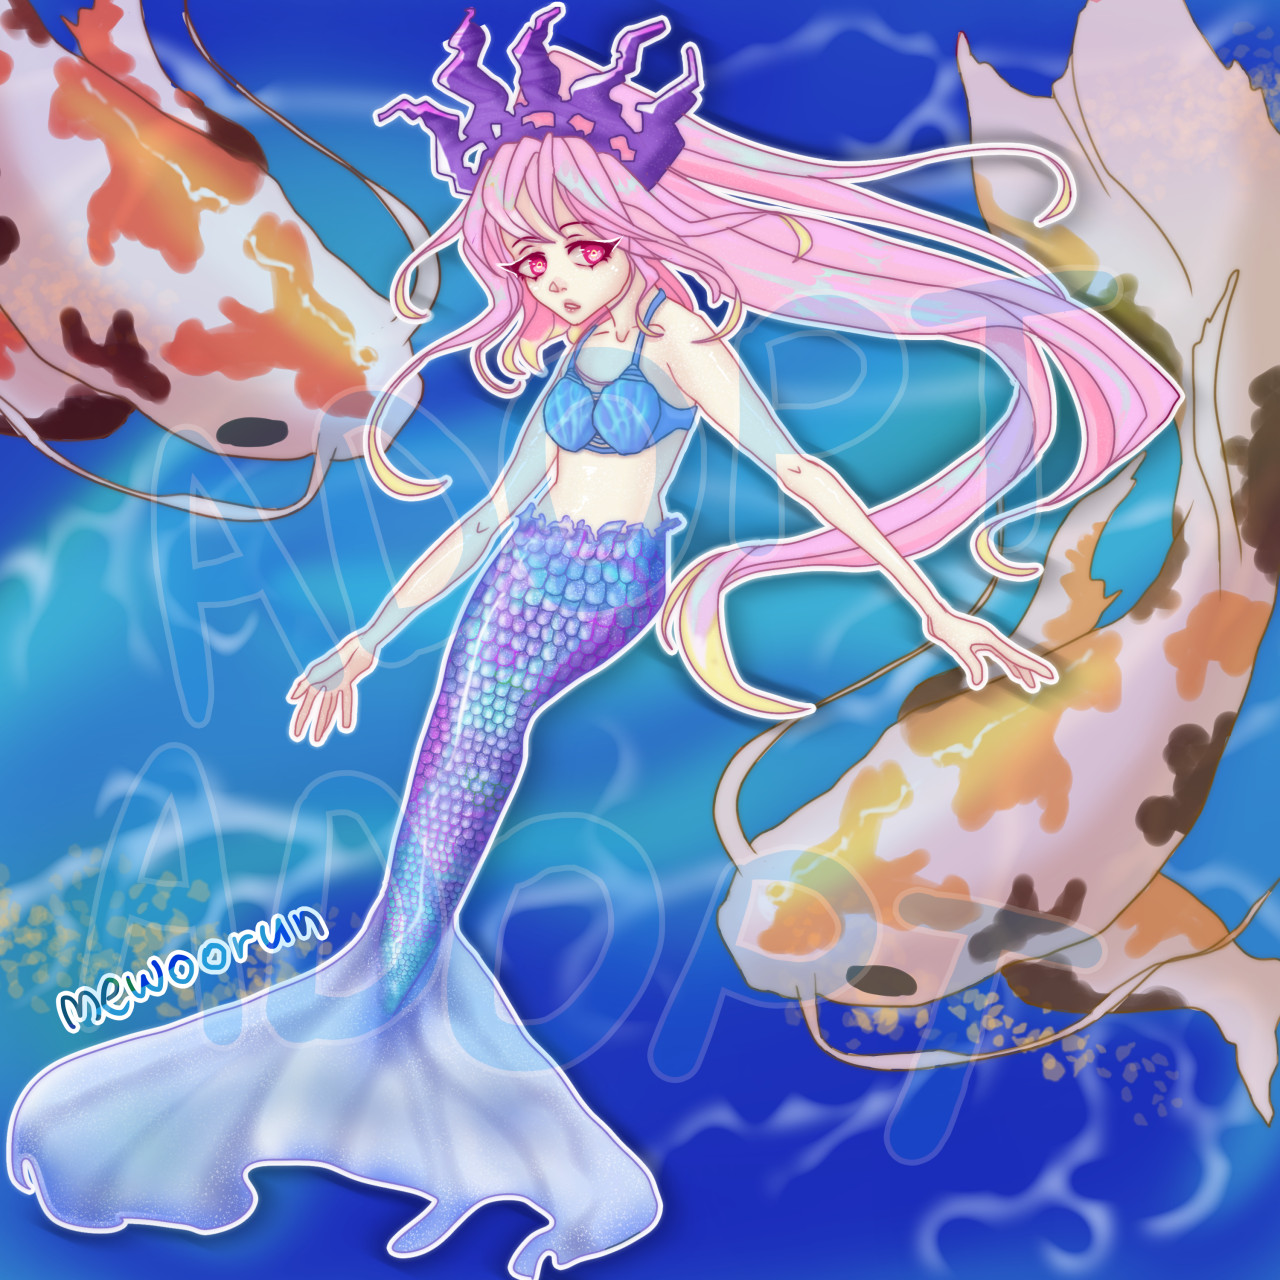 Fantasy Mermaid Art by weyowang